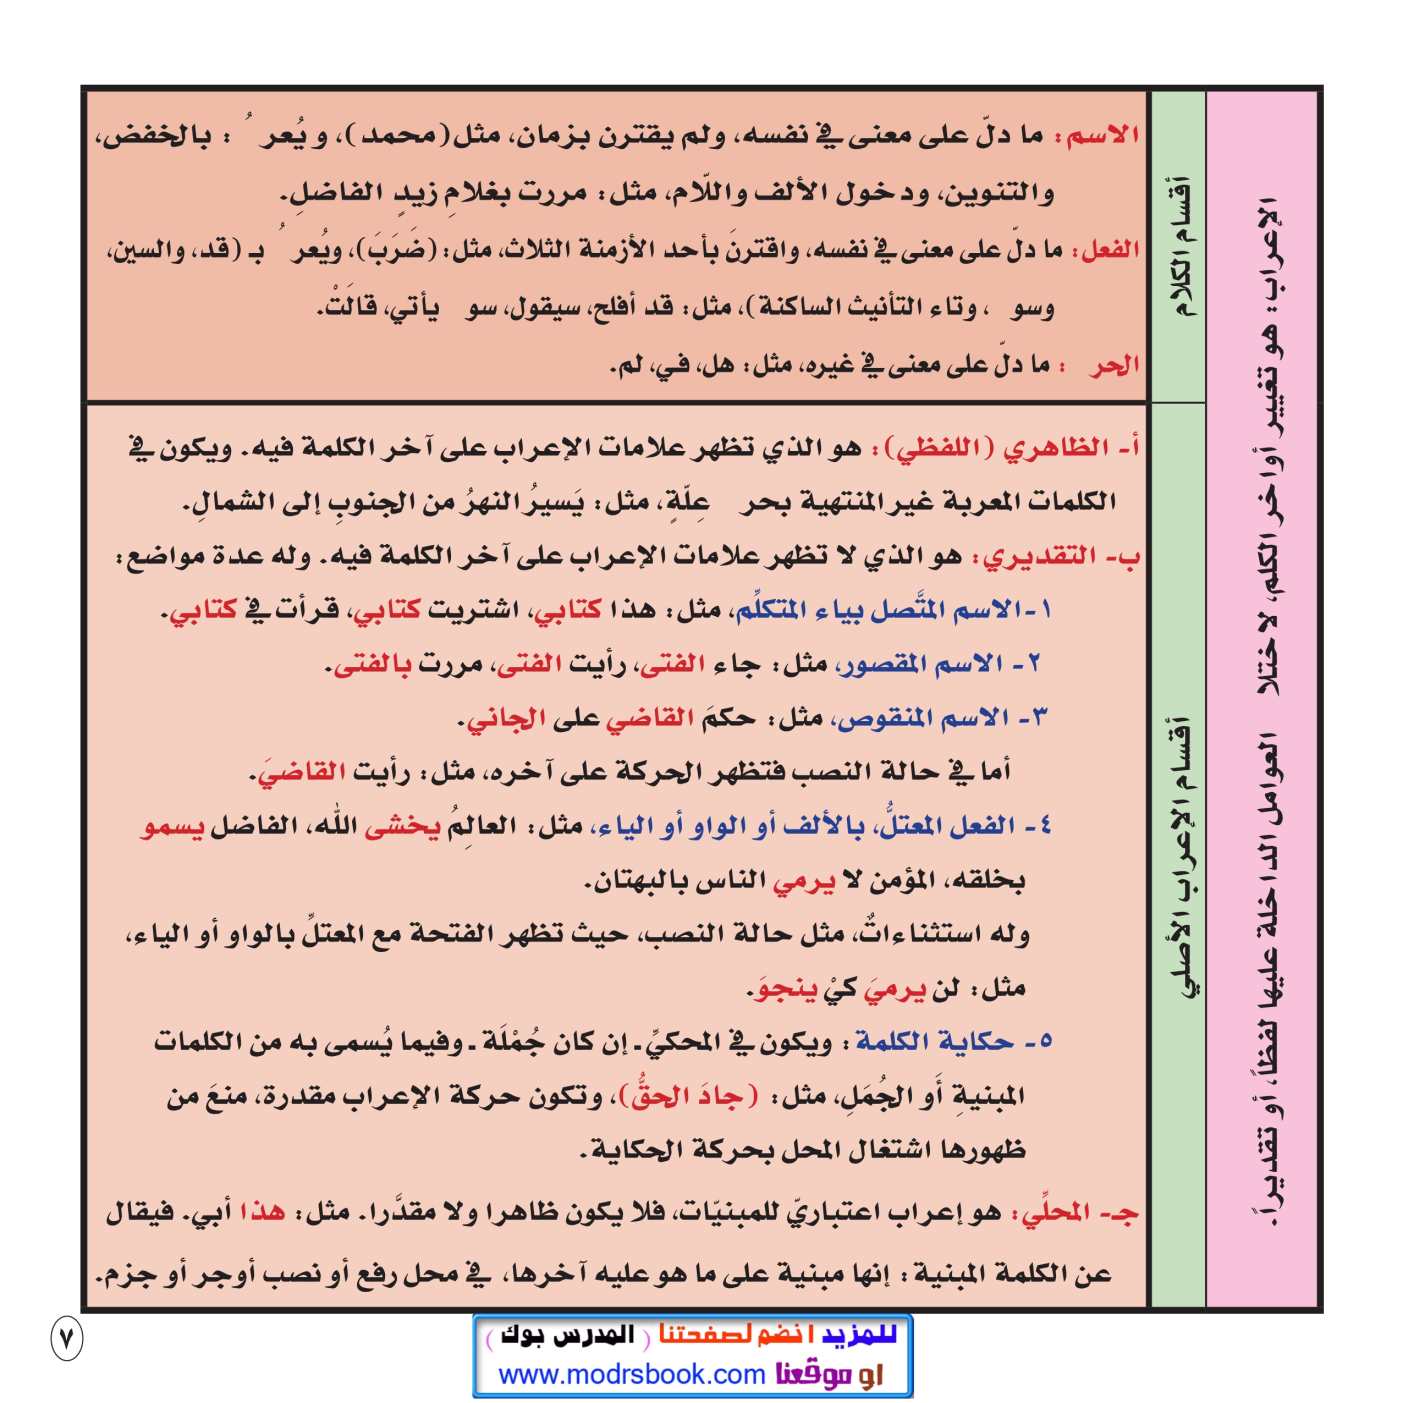 صور من داخل ملخص قواعد اللغة العربية